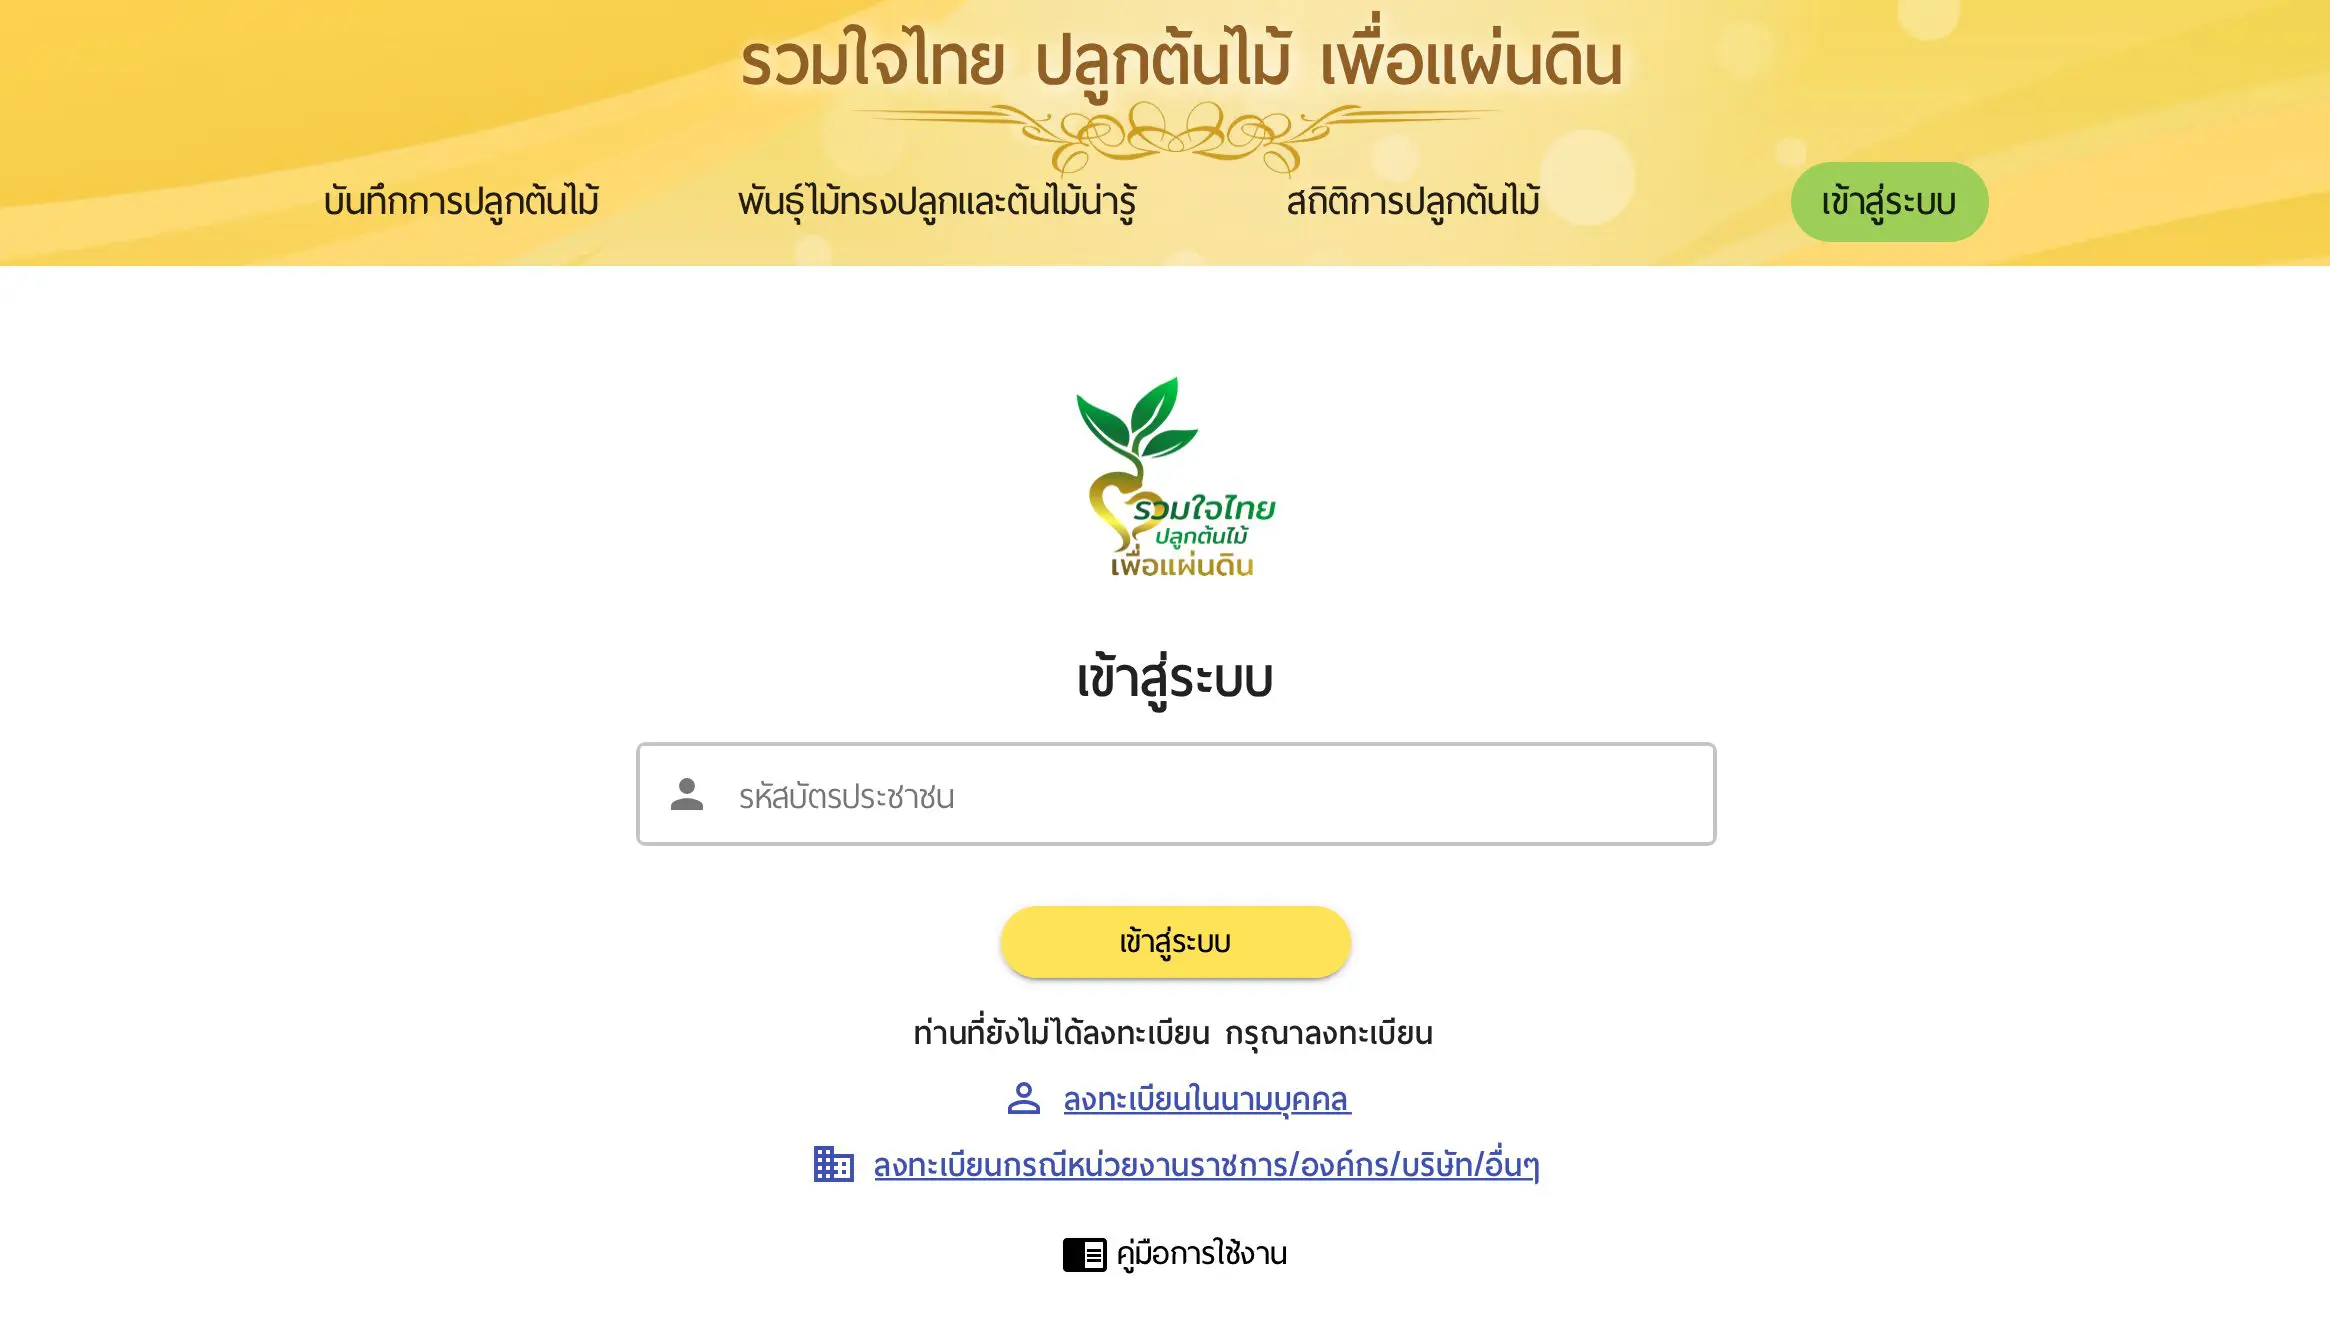 ขอเชิญลงทะเบียนปลูกต้นไม้ โครงการ"รวมใจไทย ปลูกต้นไม้ เพื่อแผ่นดิน" รับเกียรติบัตรออนไลน์ฟรี